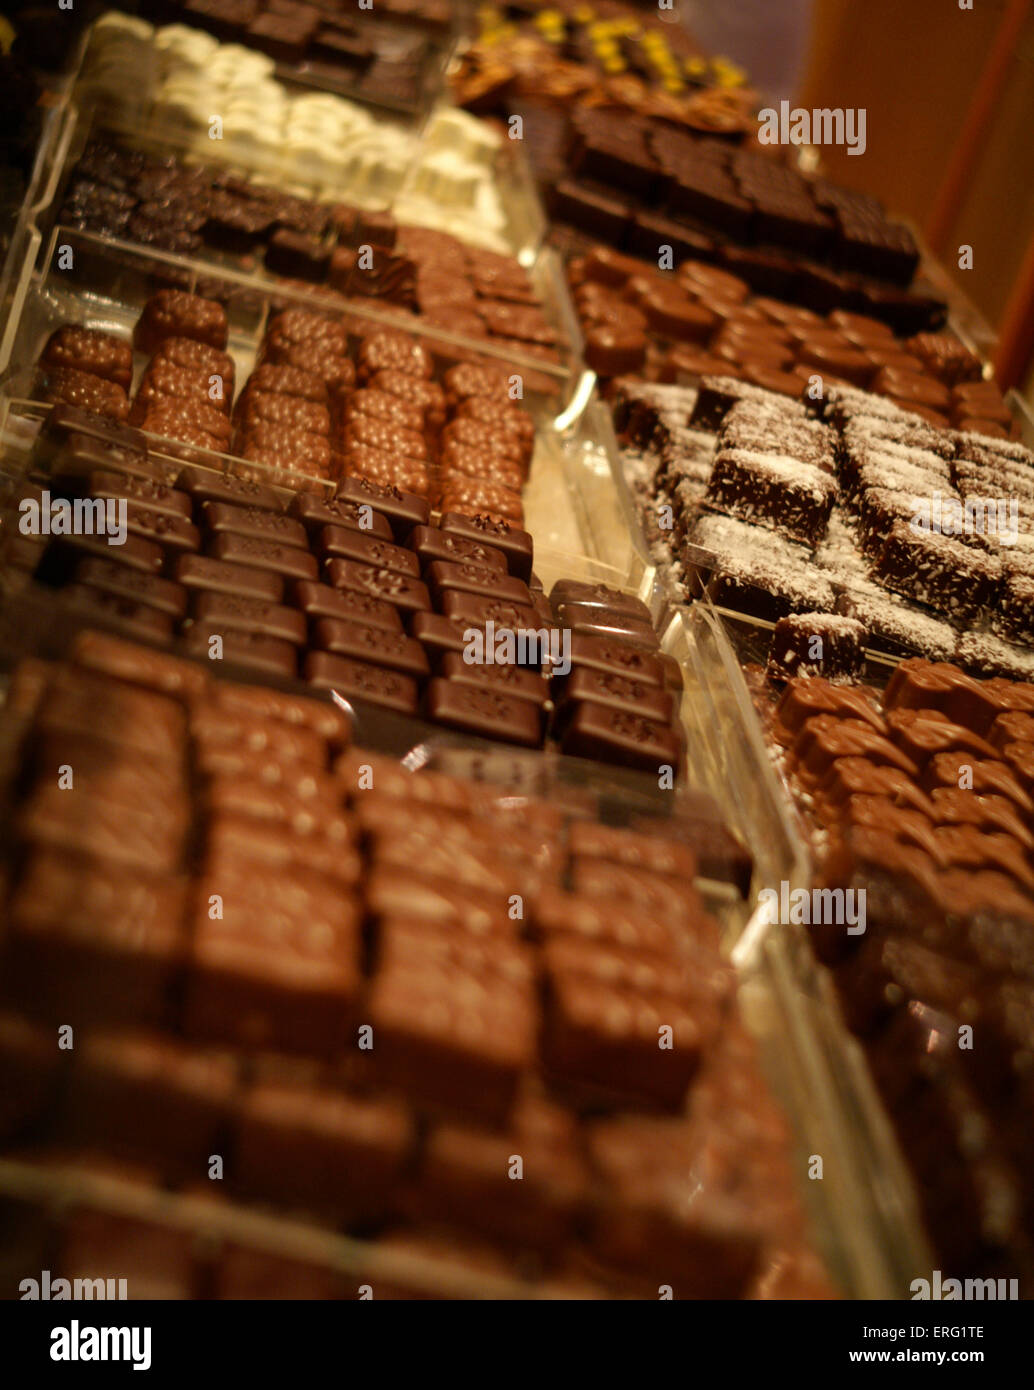 Sélection de chocolats à une fabrique de chocolat, la chocolaterie de Beussent Lachelle, France. Banque D'Images